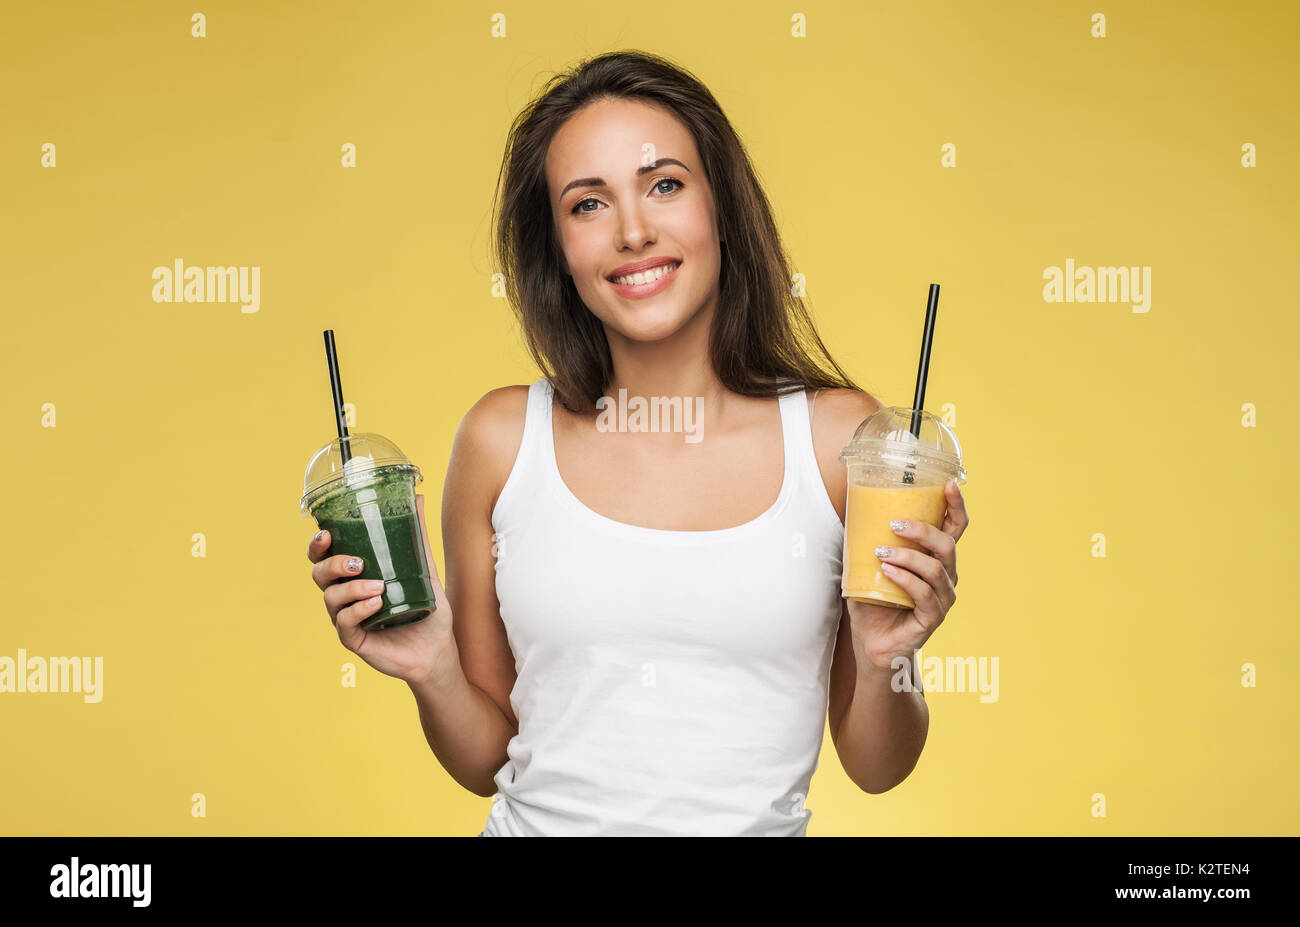 https://c8.alamy.com/comp/K2TEN4/young-attractive-brunette-woman-holding-takeaway-cups-of-smoothie-K2TEN4.jpg